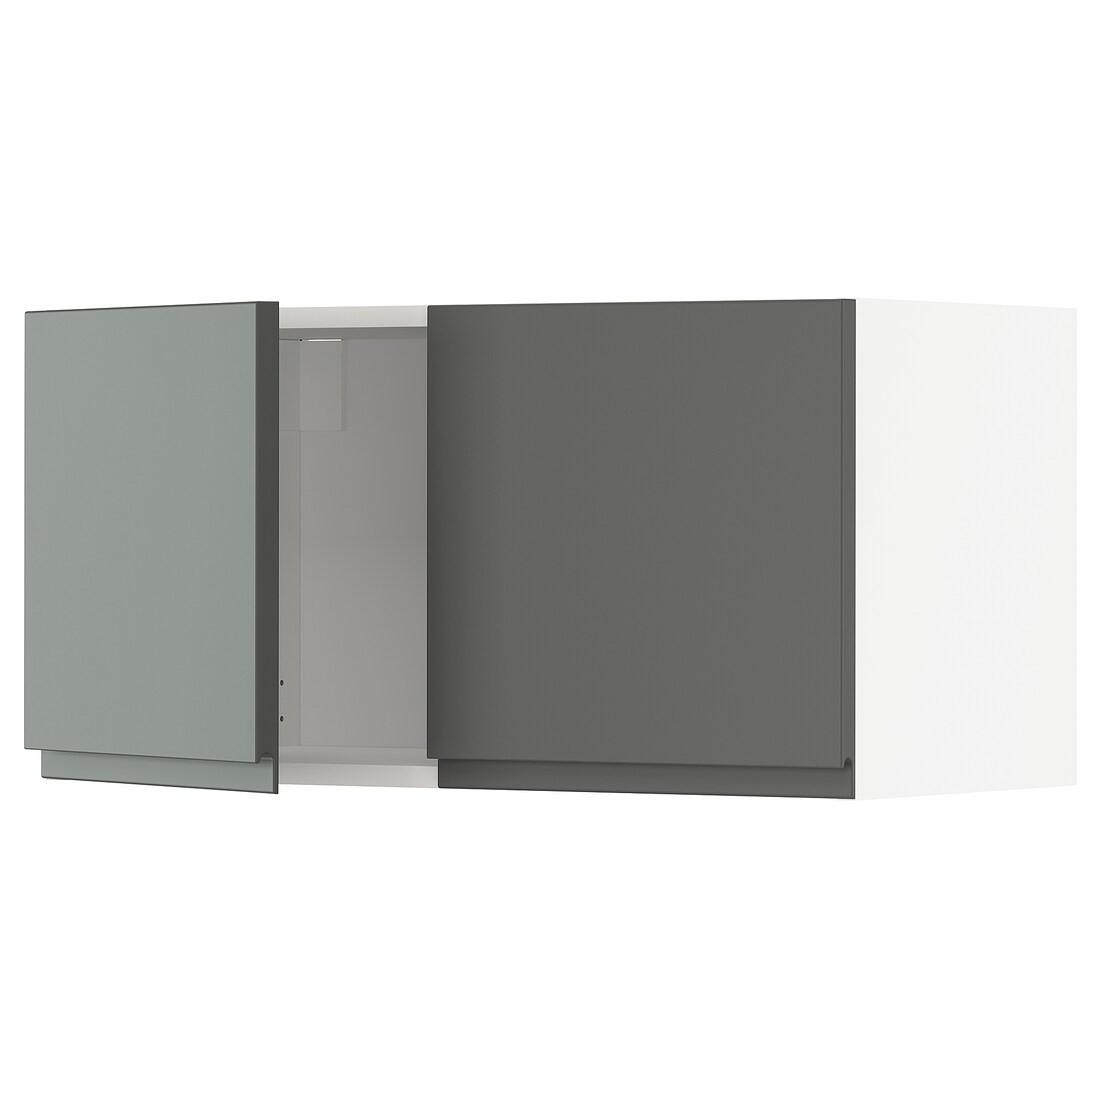 METOD МЕТОД Навесной шкаф с 2 дверями, белый / Voxtorp темно-серый, 80x40 см